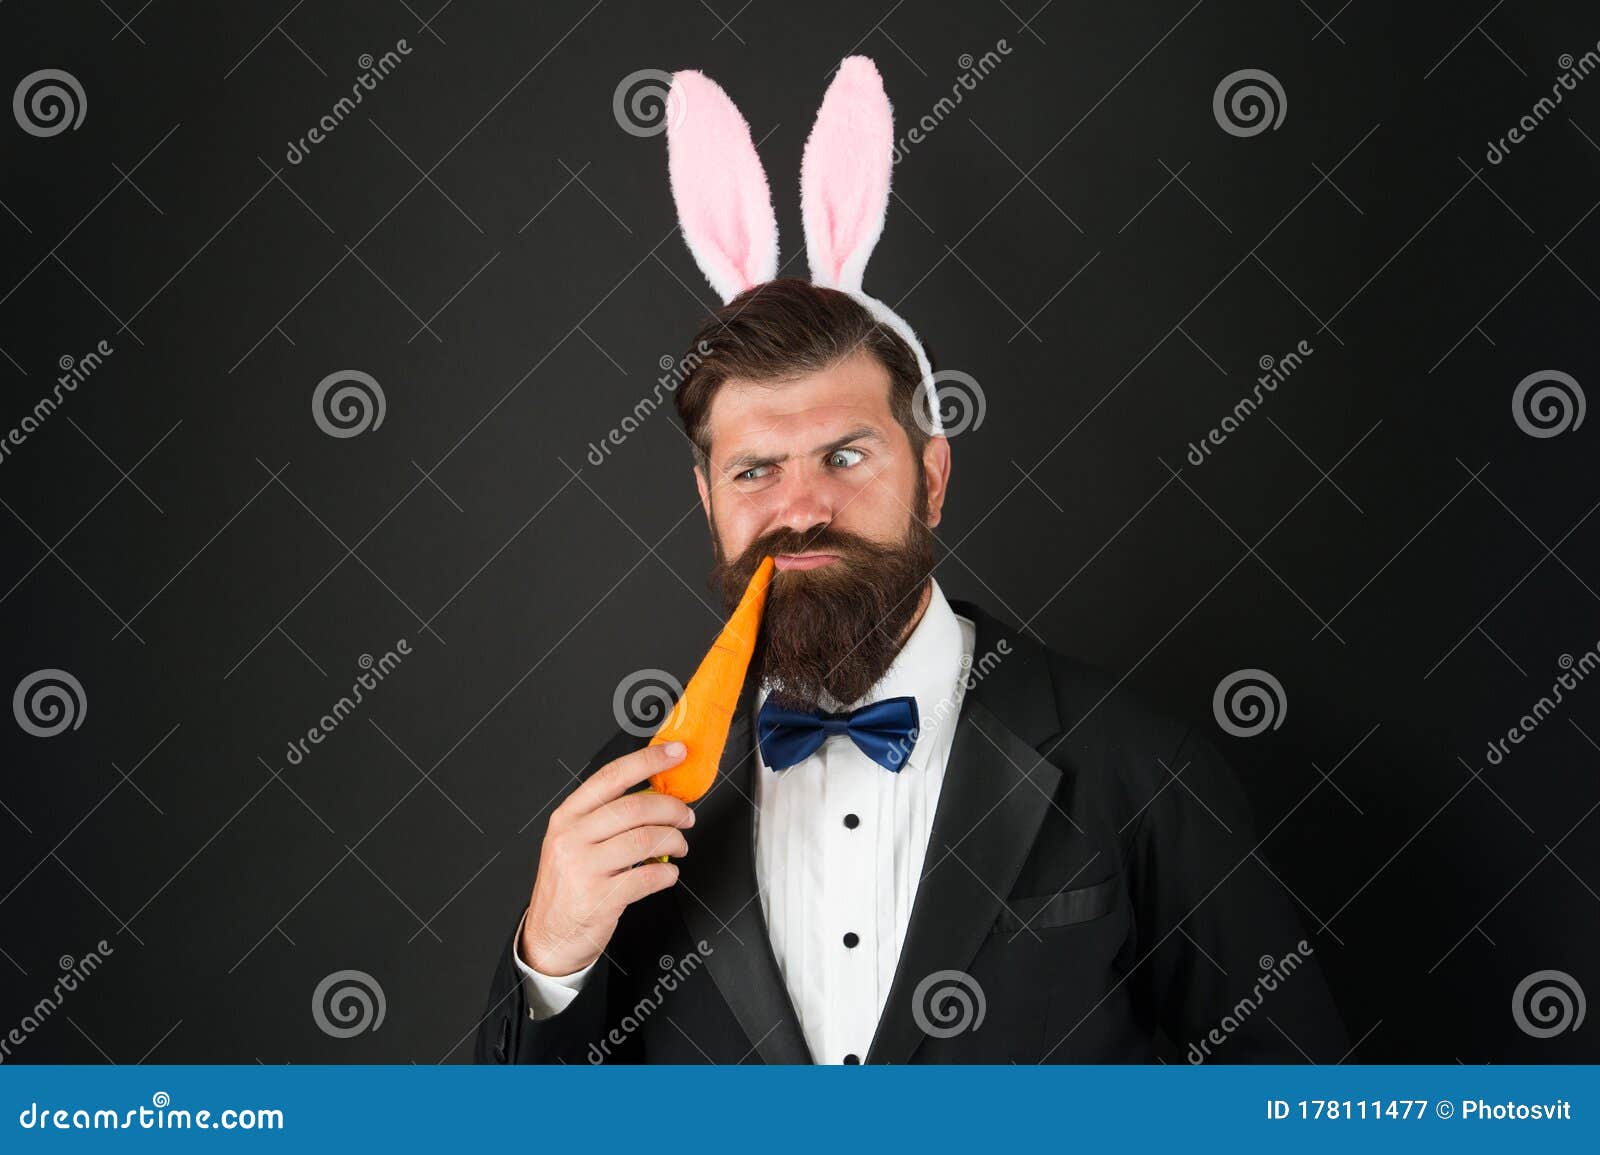 Prison suit rabbit man